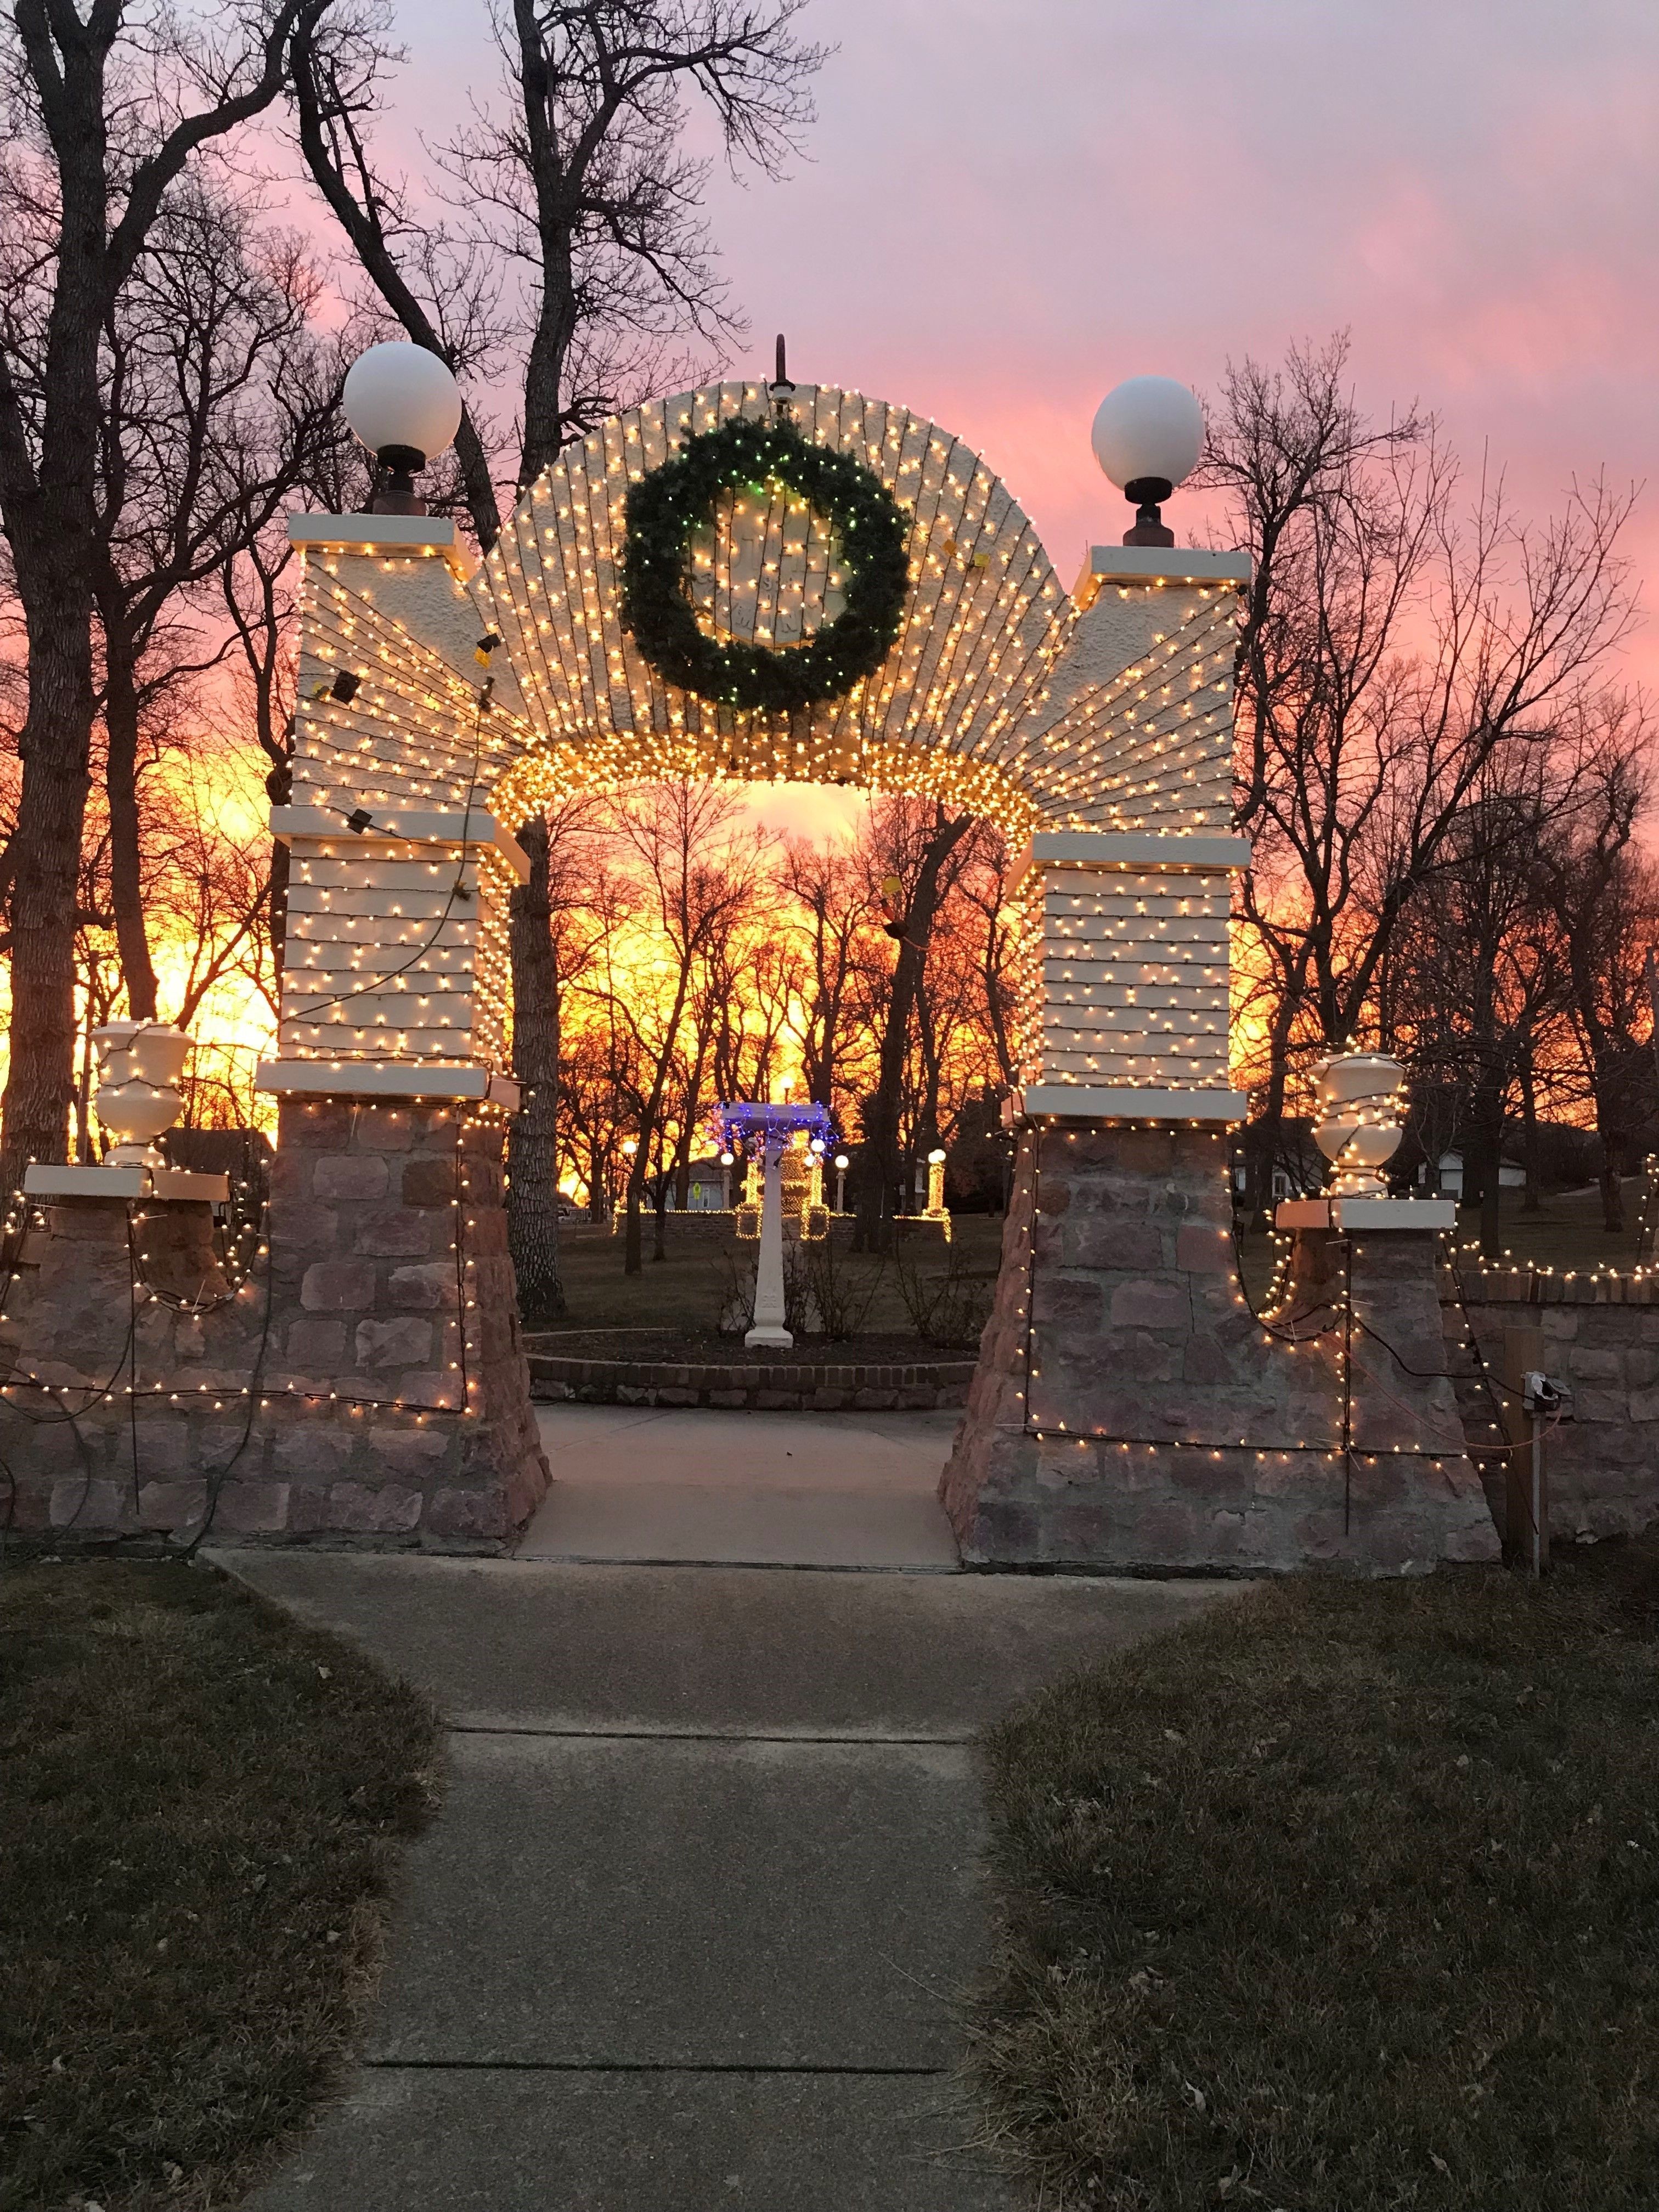 Christmas in Emerson, Nebraska!